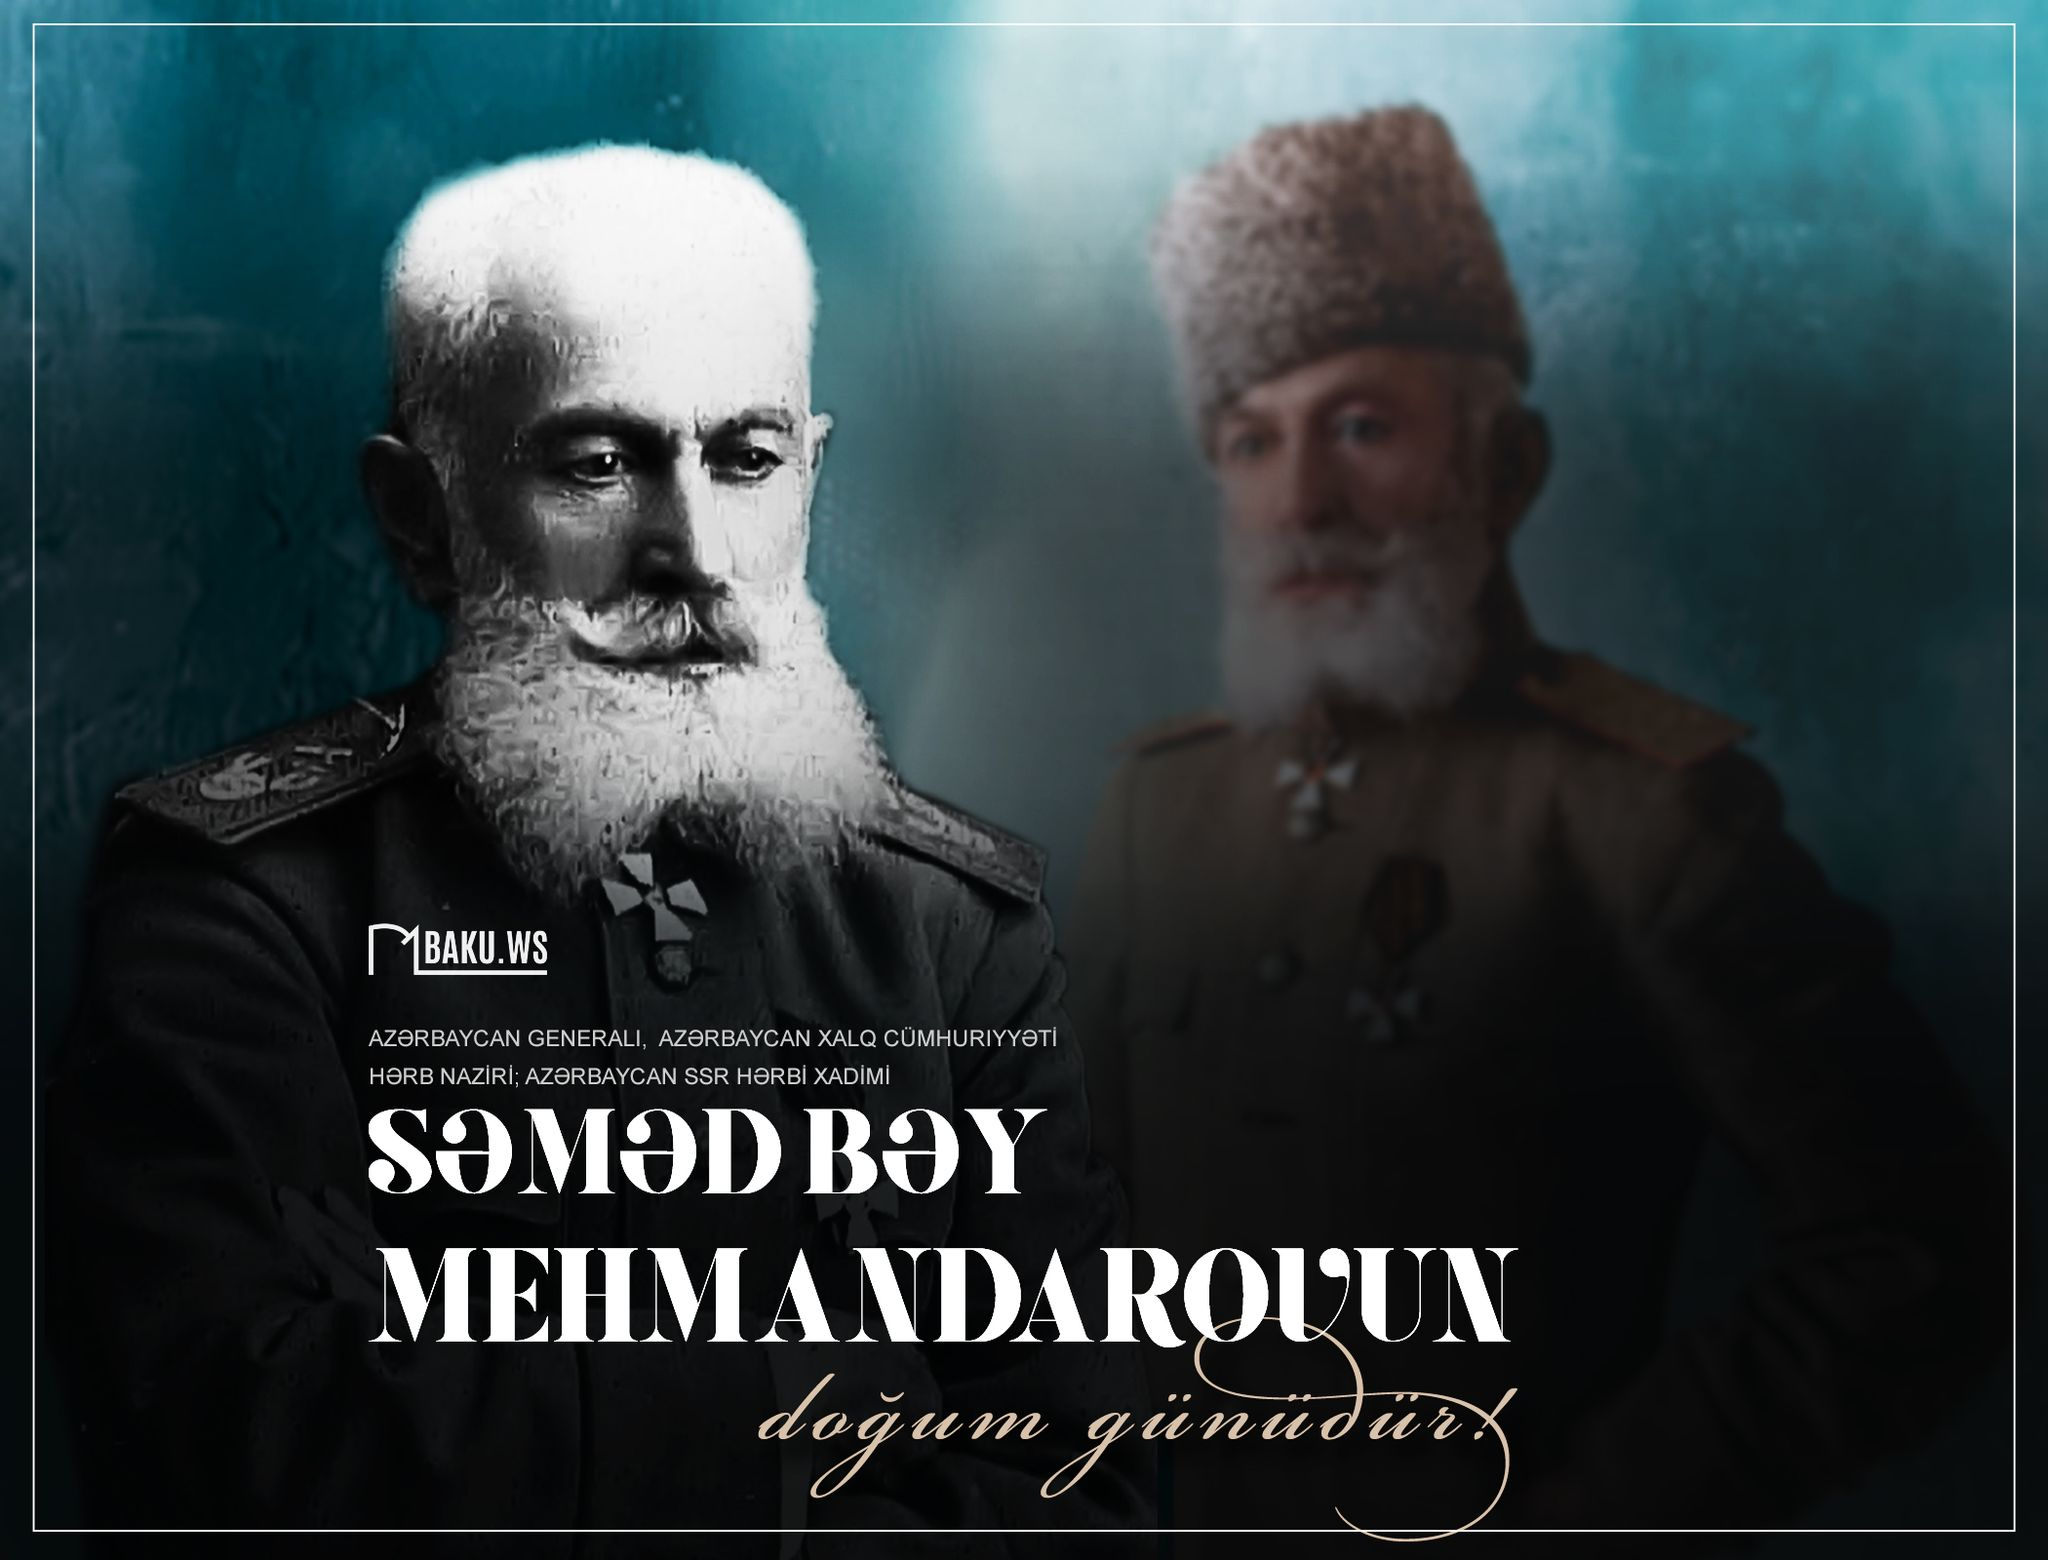 Bu gün ilk hərbi nazirimiz Səməd bəy Mehmandarovun doğum günüdür